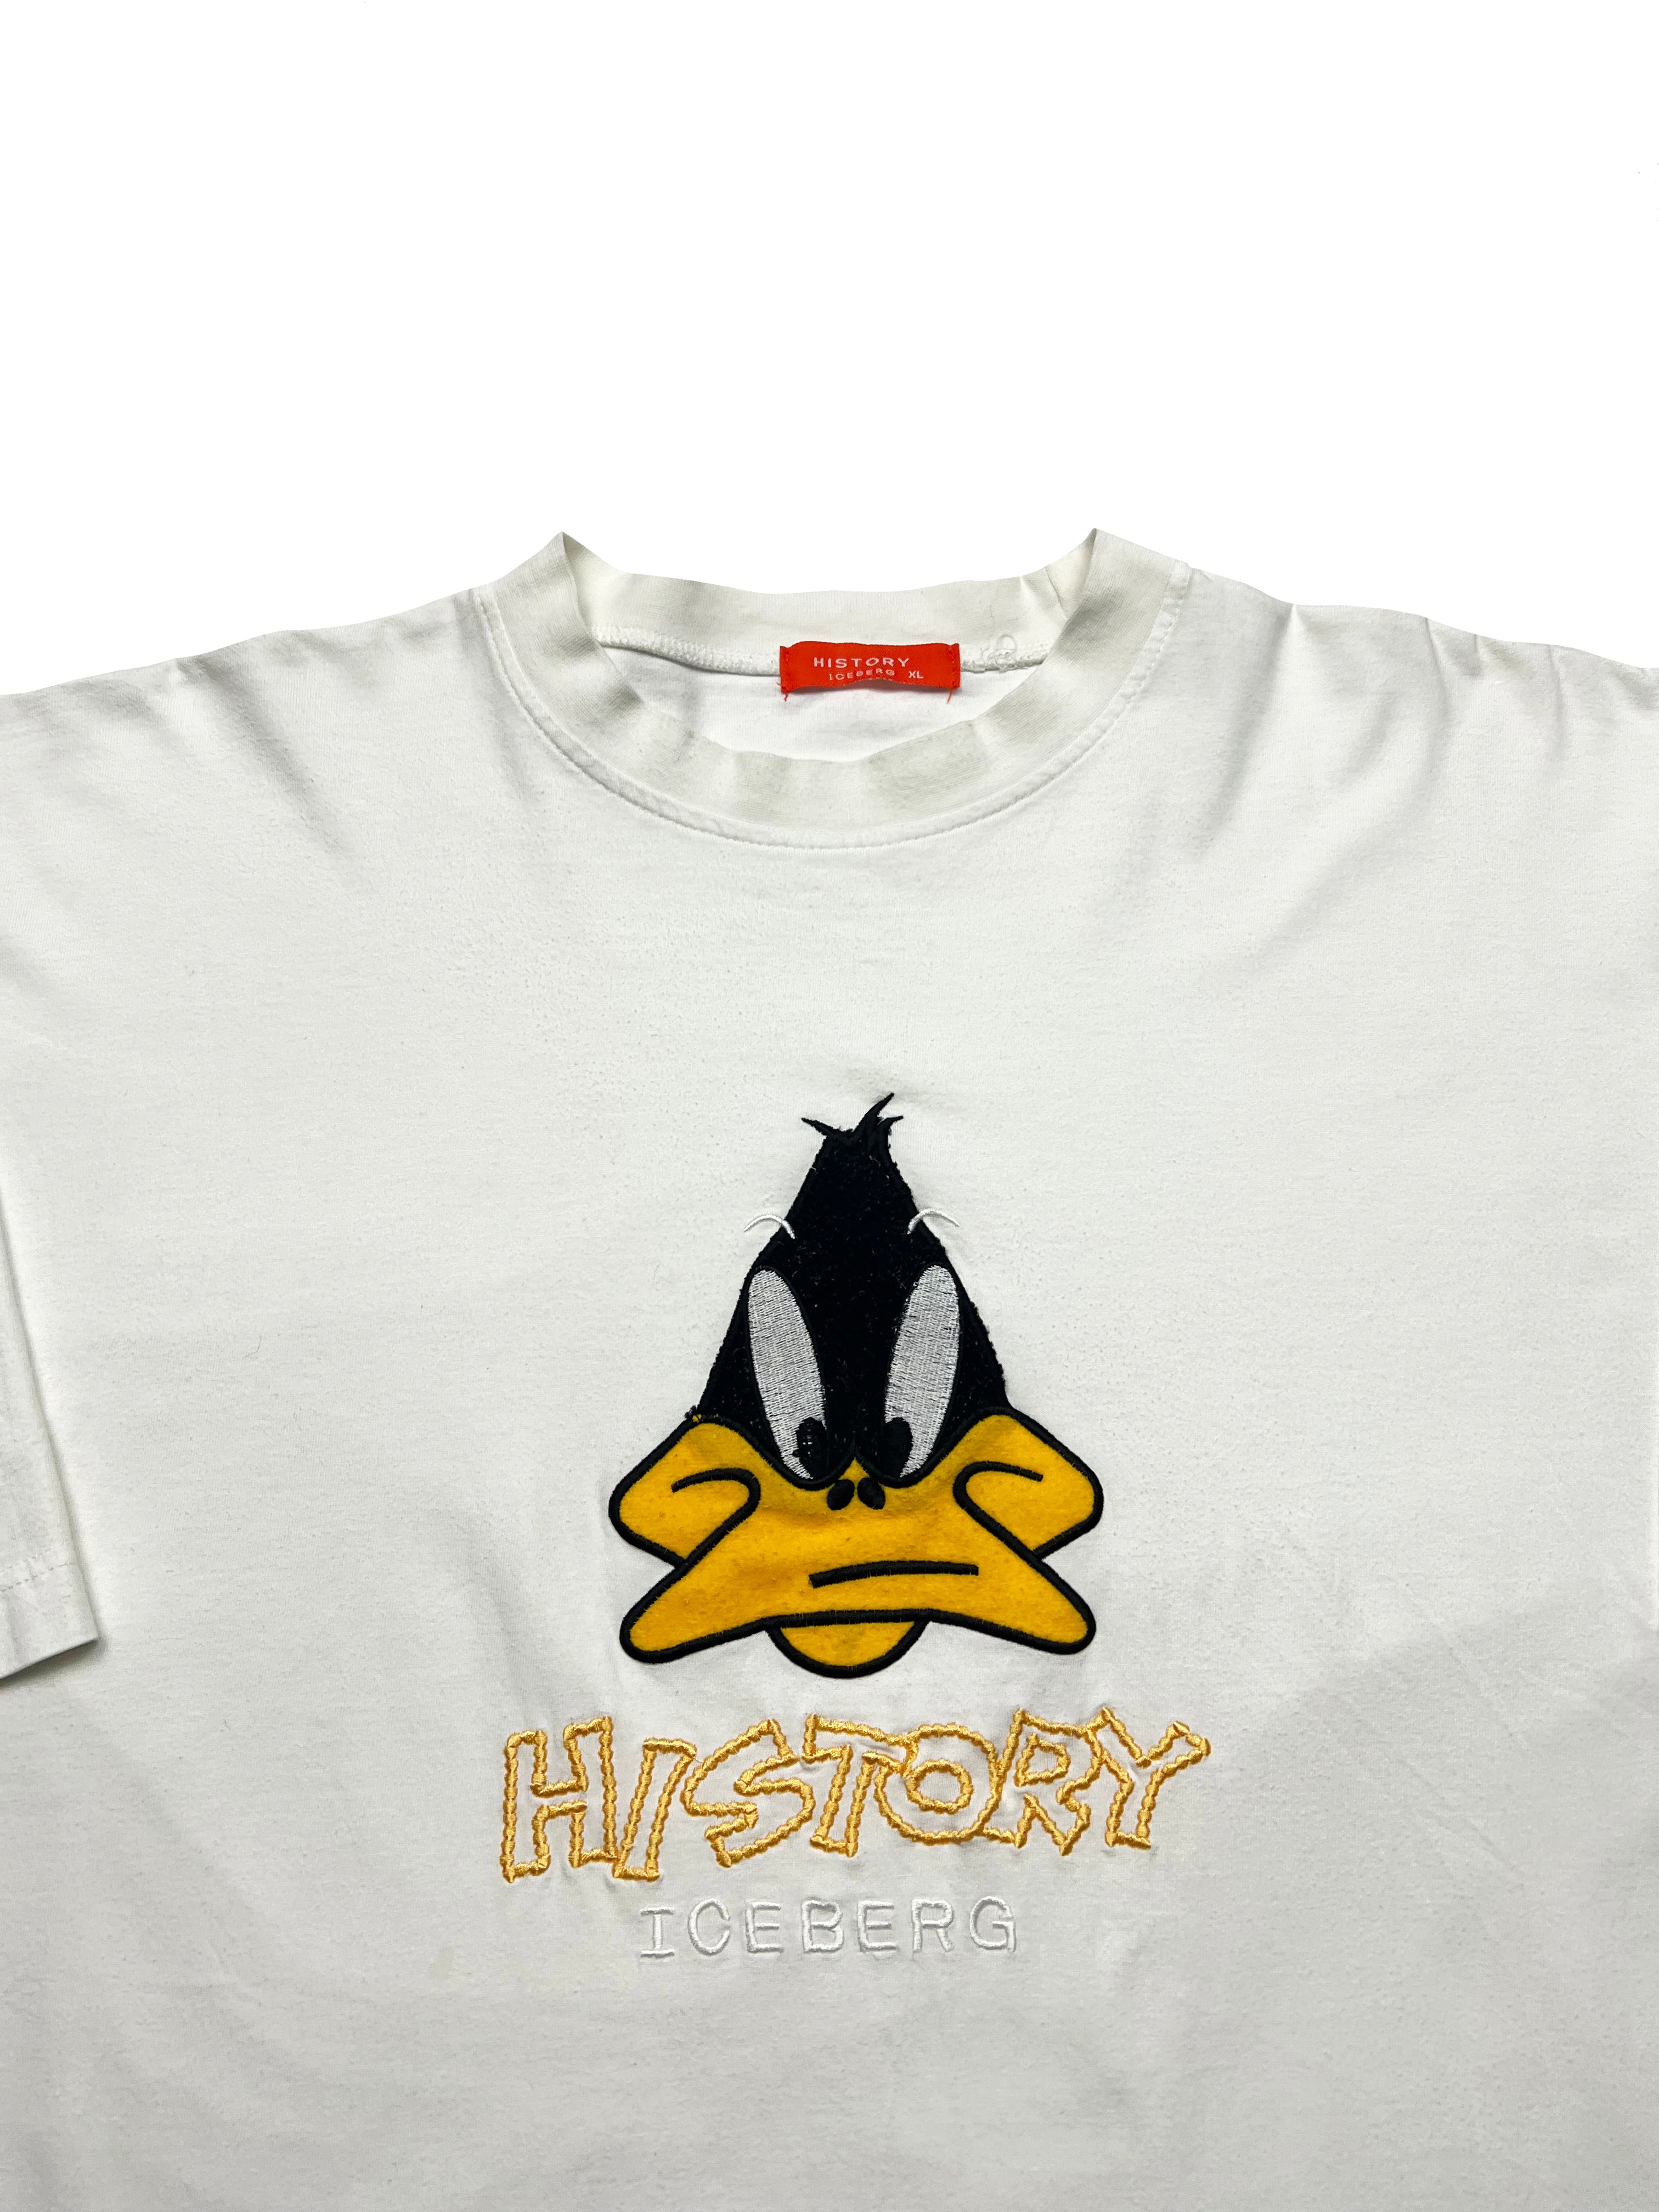 Iceberg Daffy Duck White T-shirt 00's